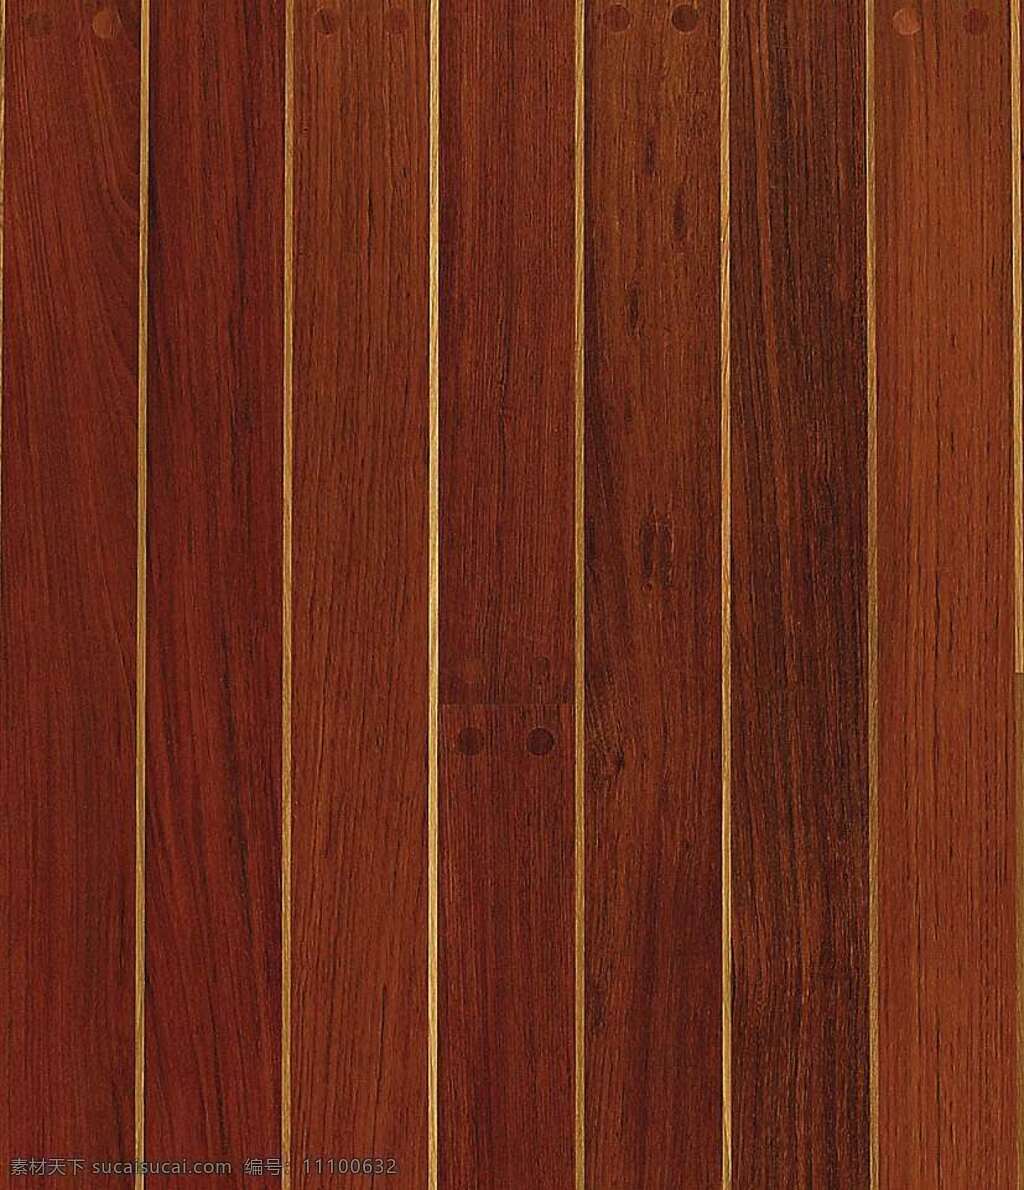 526 木地板 贴图 木材 地板贴图 木地板贴图 木地板效果图 室内设计 木地板材质 装饰素材 室内装饰用图